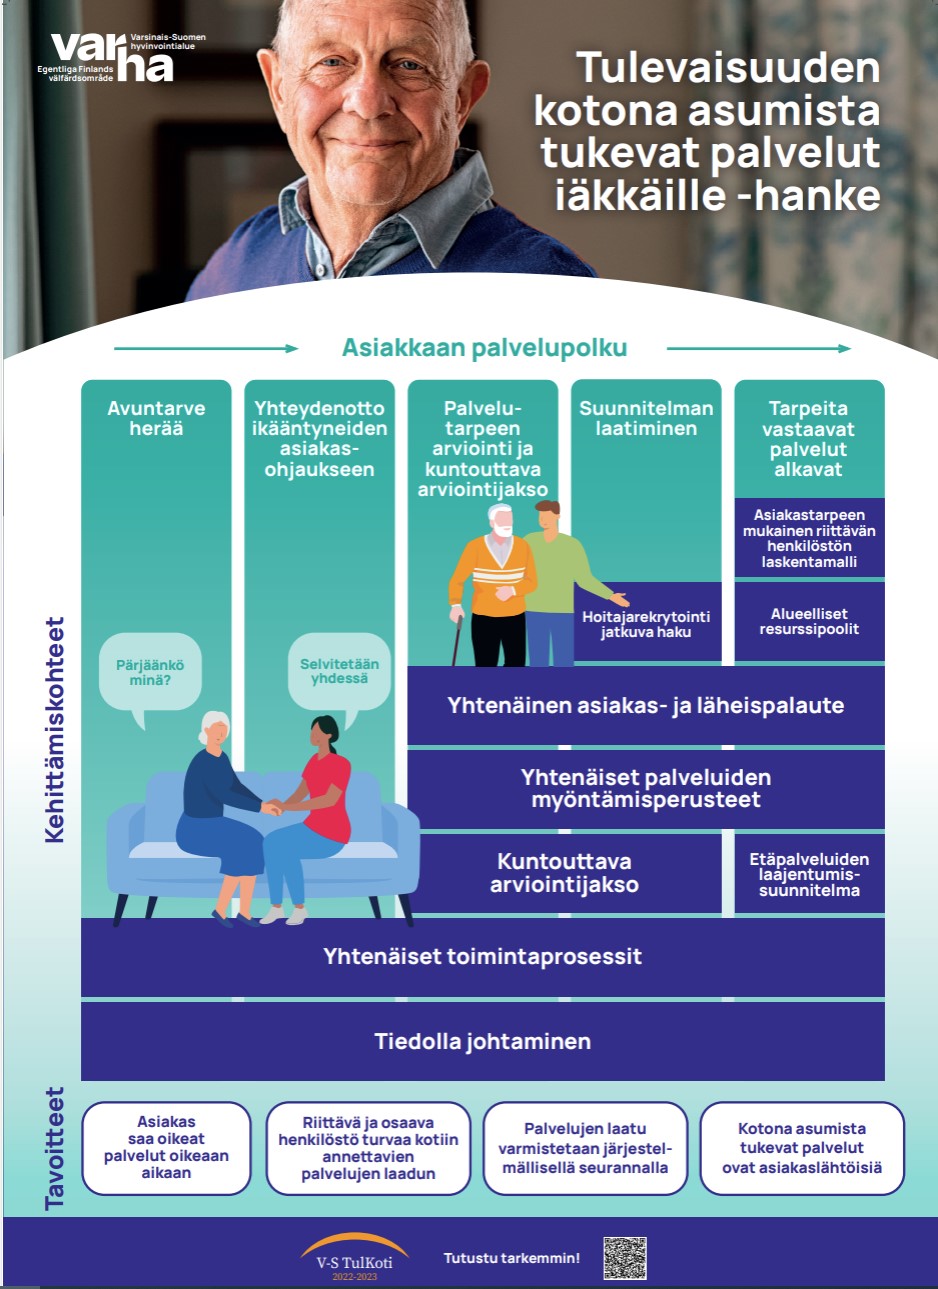 Varsinais-Suomen Tulevaisuuden kotona asumista tukevat palvelut iäkkäille-hankekokonaisuus 